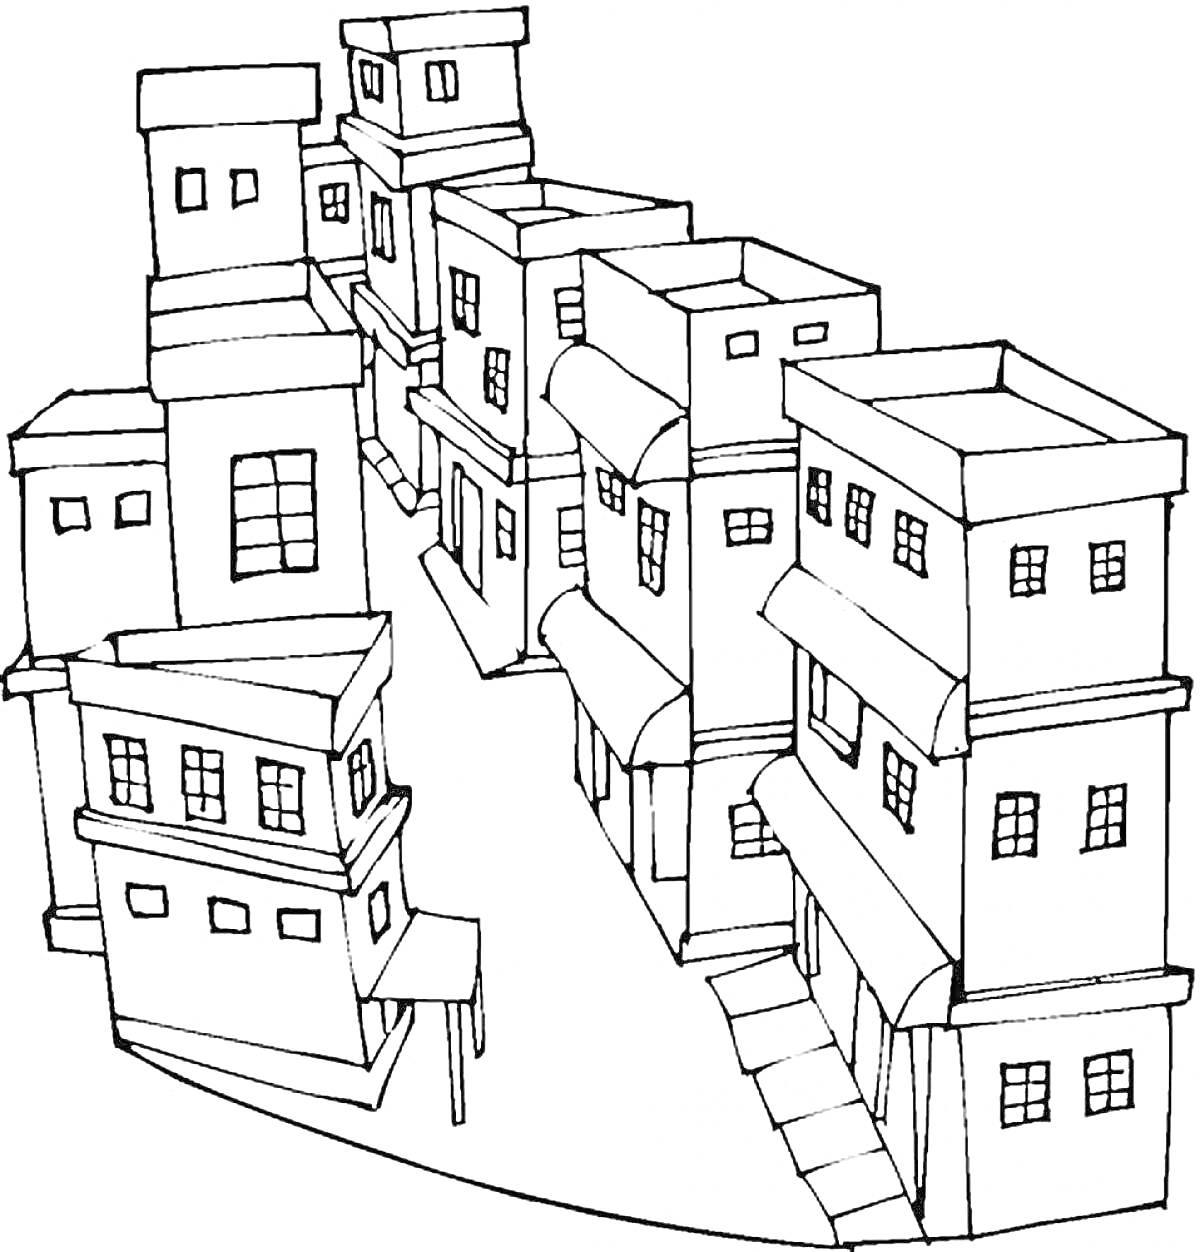 Улица с многоэтажными домами